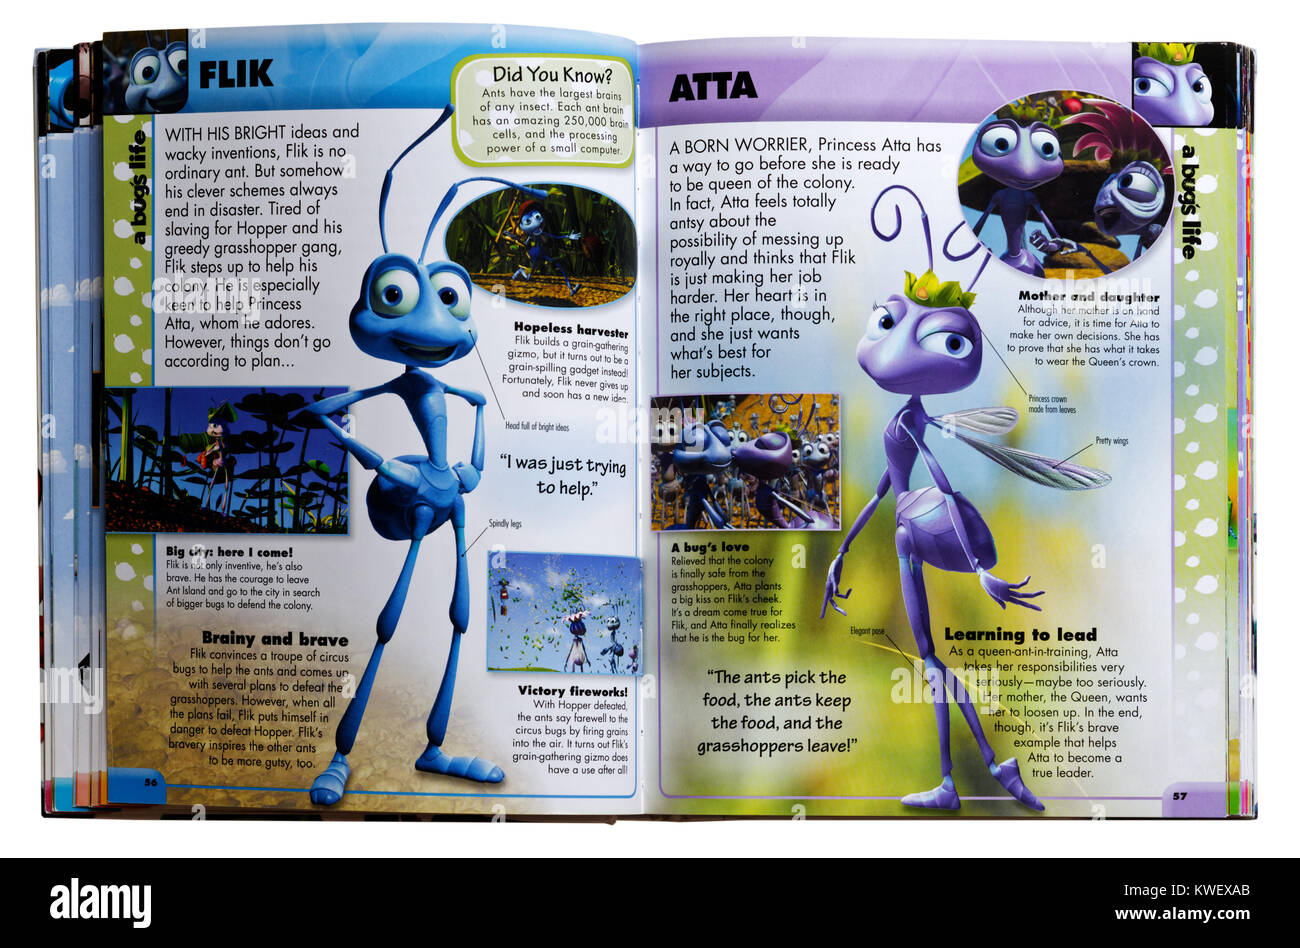 Personajes de Pixar y Flik Atta de la película A Bug's Life en una guía de personajes de Pixar Foto de stock